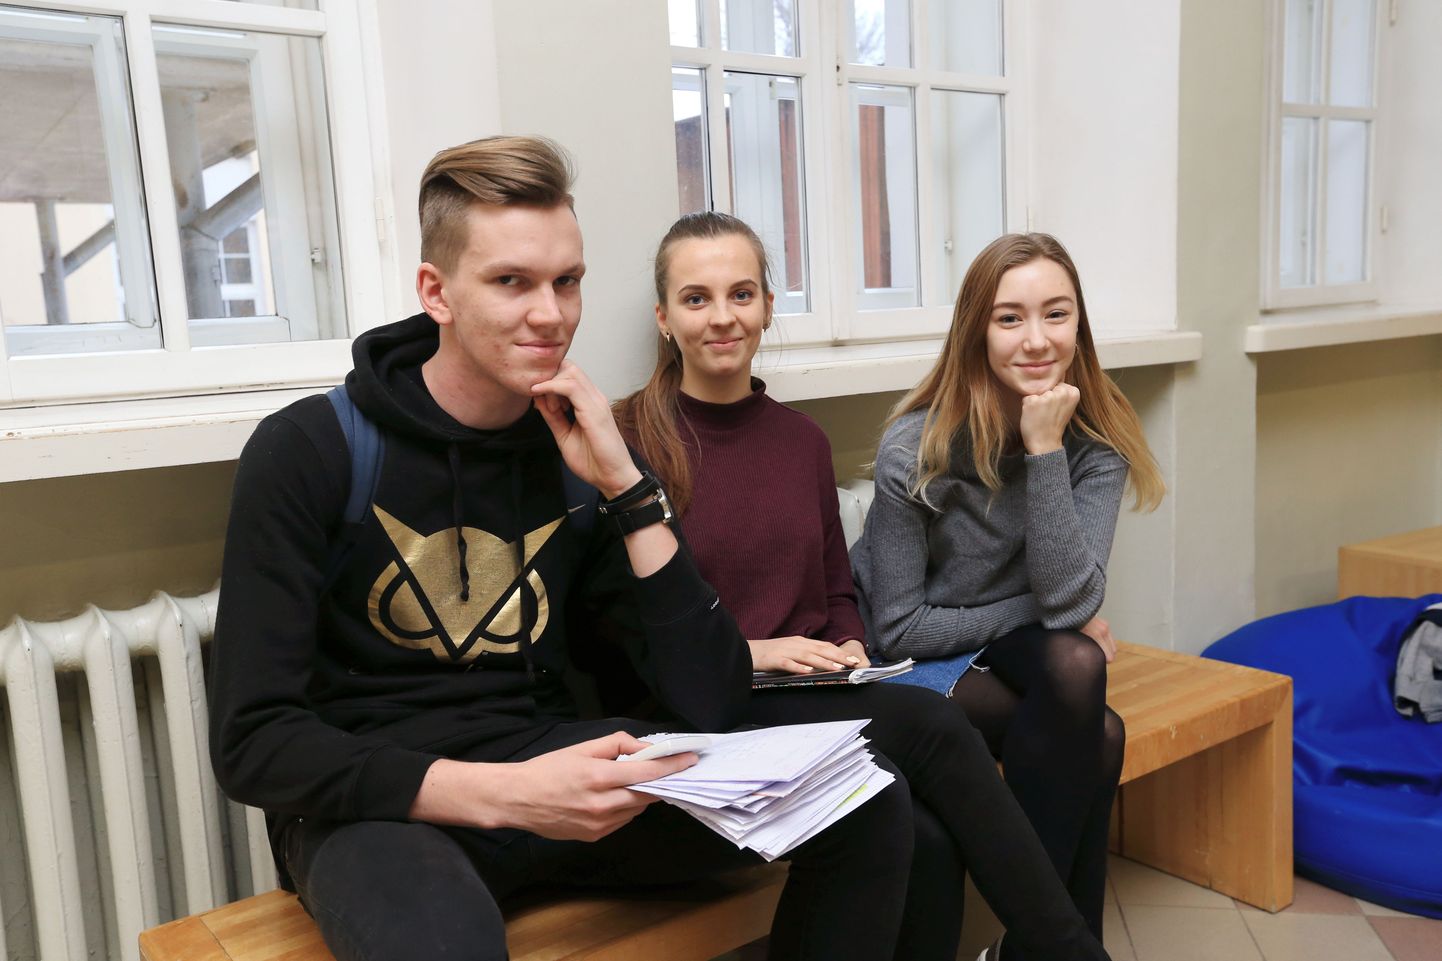 Miina Härma gümnaasiumi 12.c klassi õpilased Danel Kivi, Kadri Margus ja Hanna Jaani 
ei näinud 
muudetud koolivaheajas suurt probleemi.